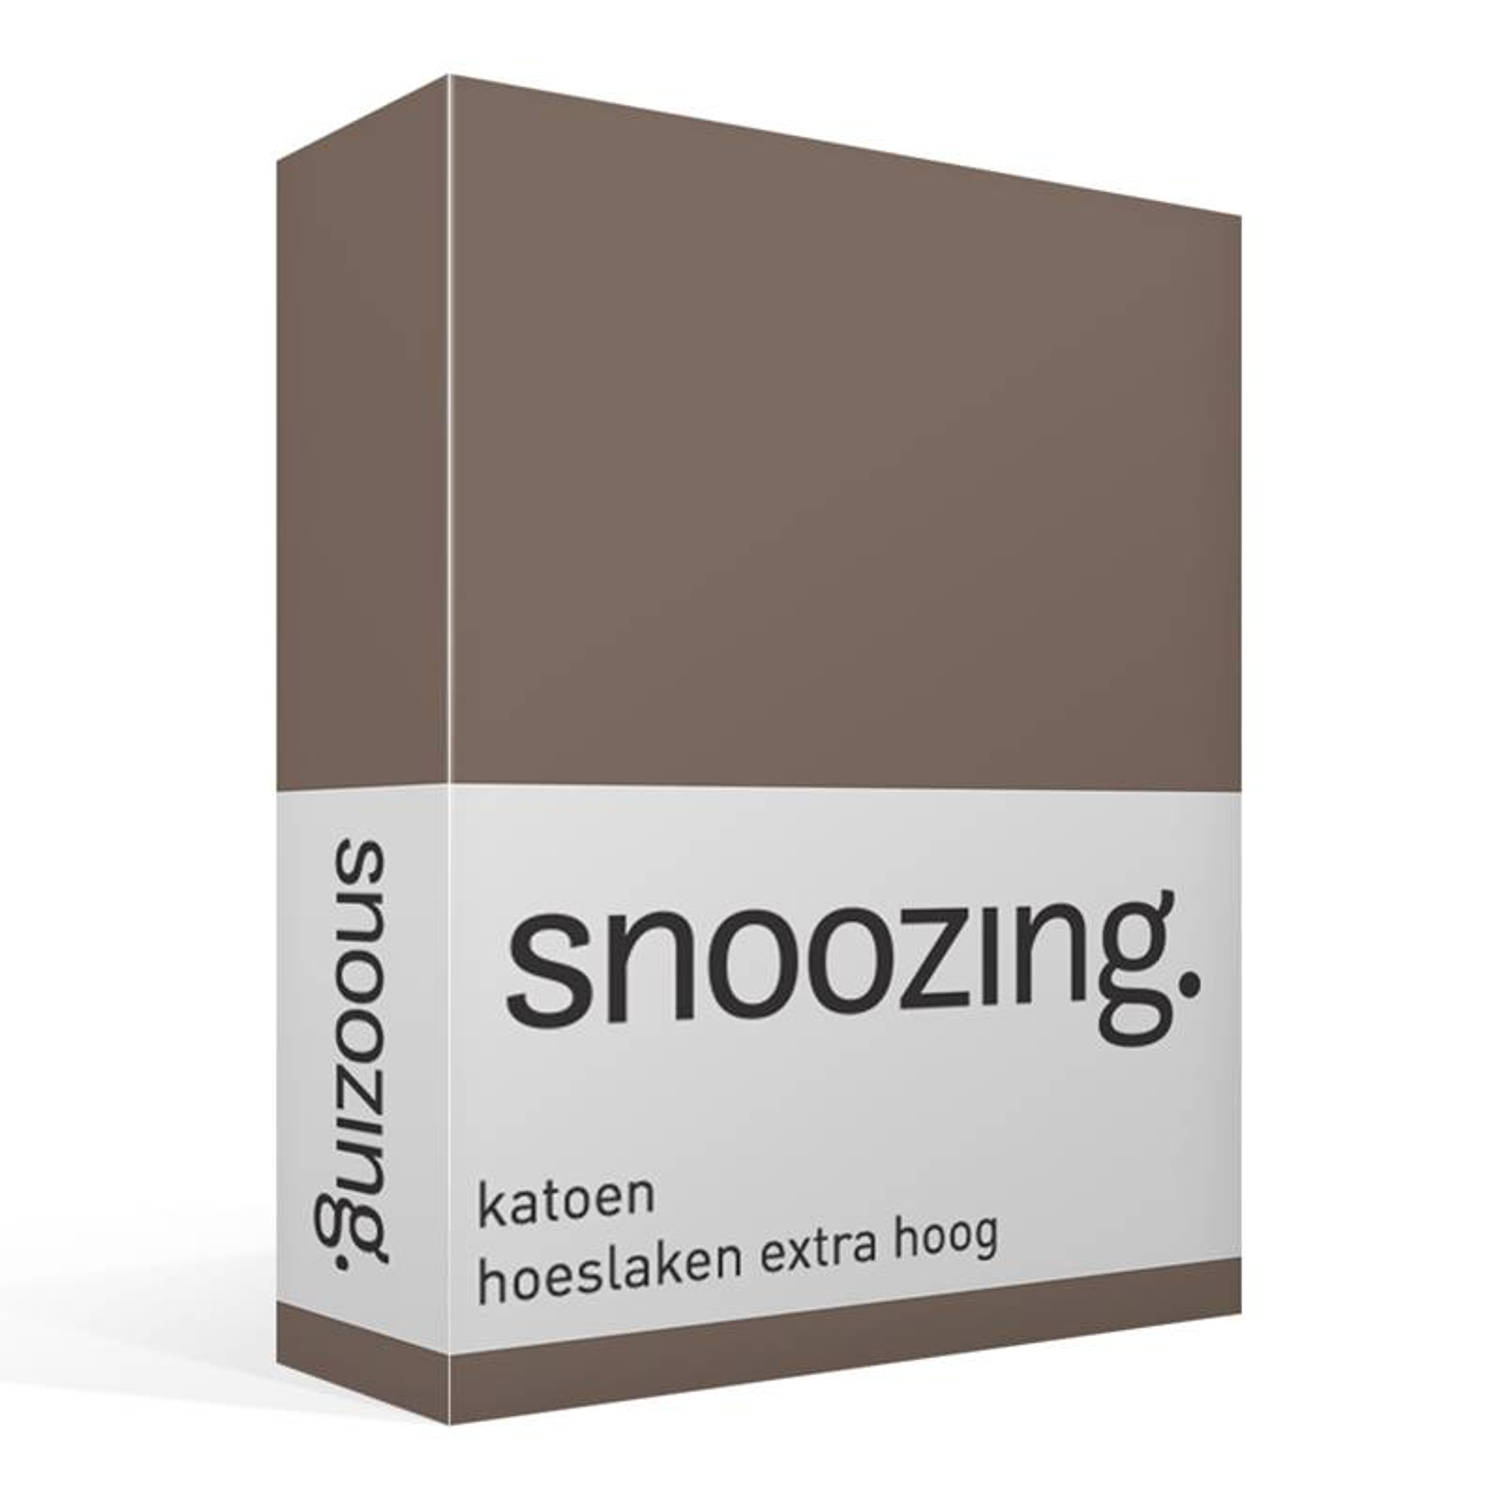 Snoozing katoen hoeslaken extra hoog - 100% katoen - 1-persoons (100x220 cm) - Bruin